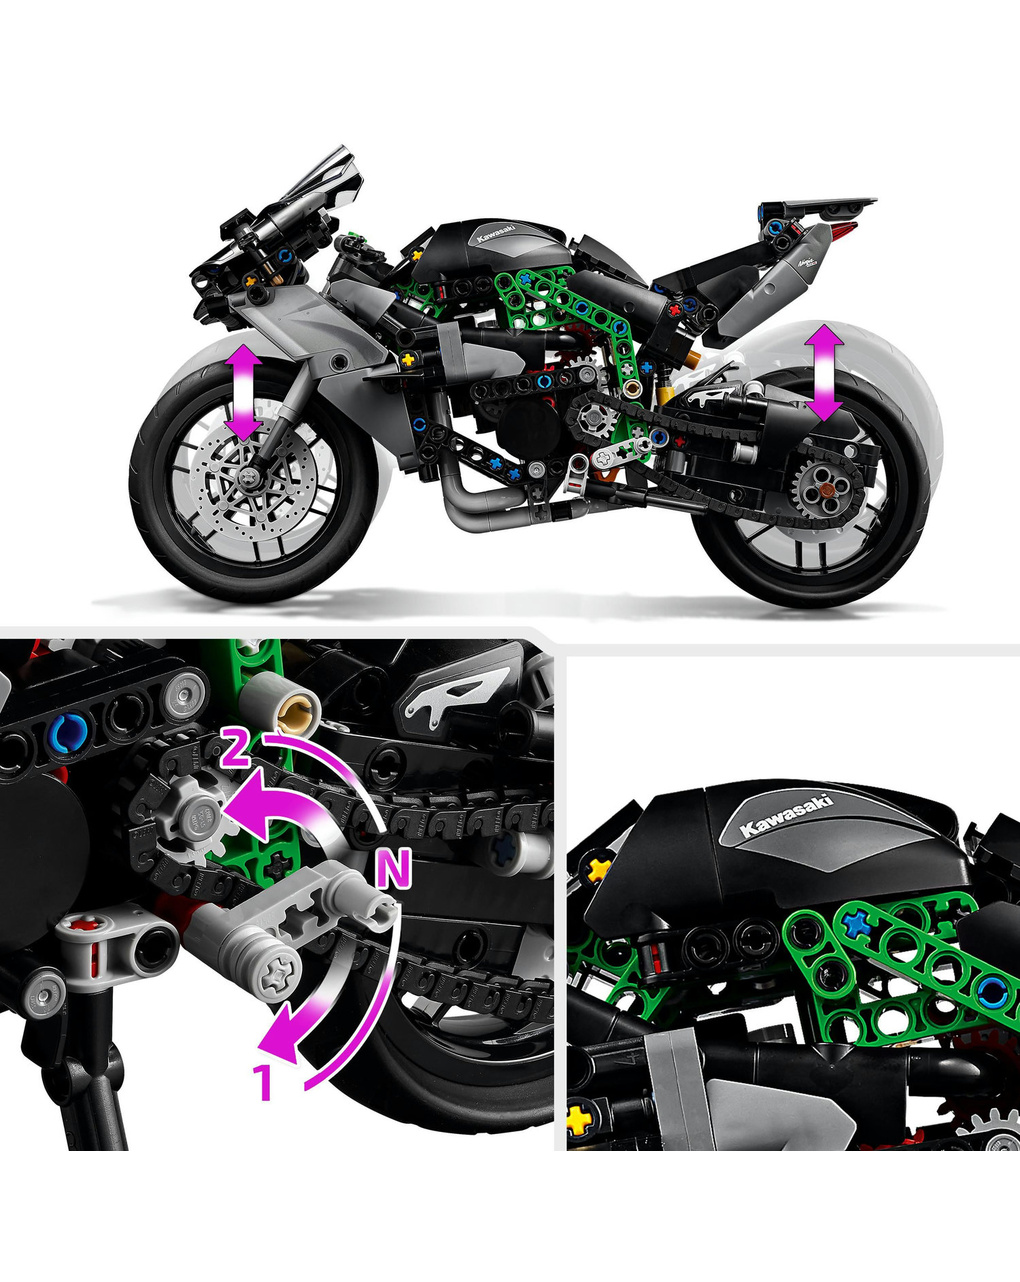 Motocicletta kawasaki ninja h2r - 42170 - lego technic - LEGO